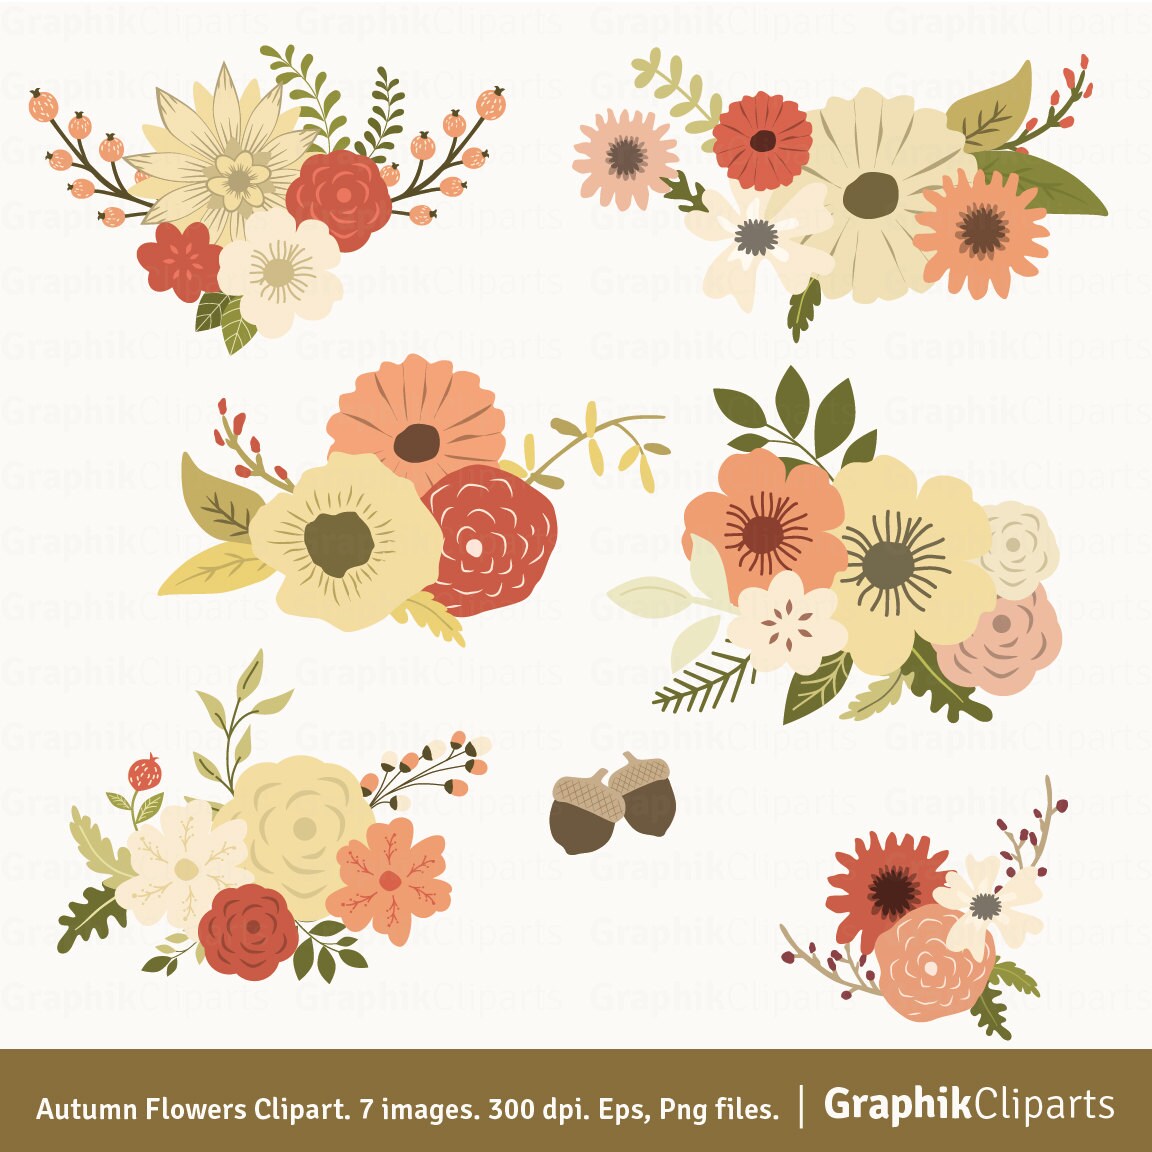 Autumn Flowers Clipart. Floral Clipart. Autumn Clipart. Vector